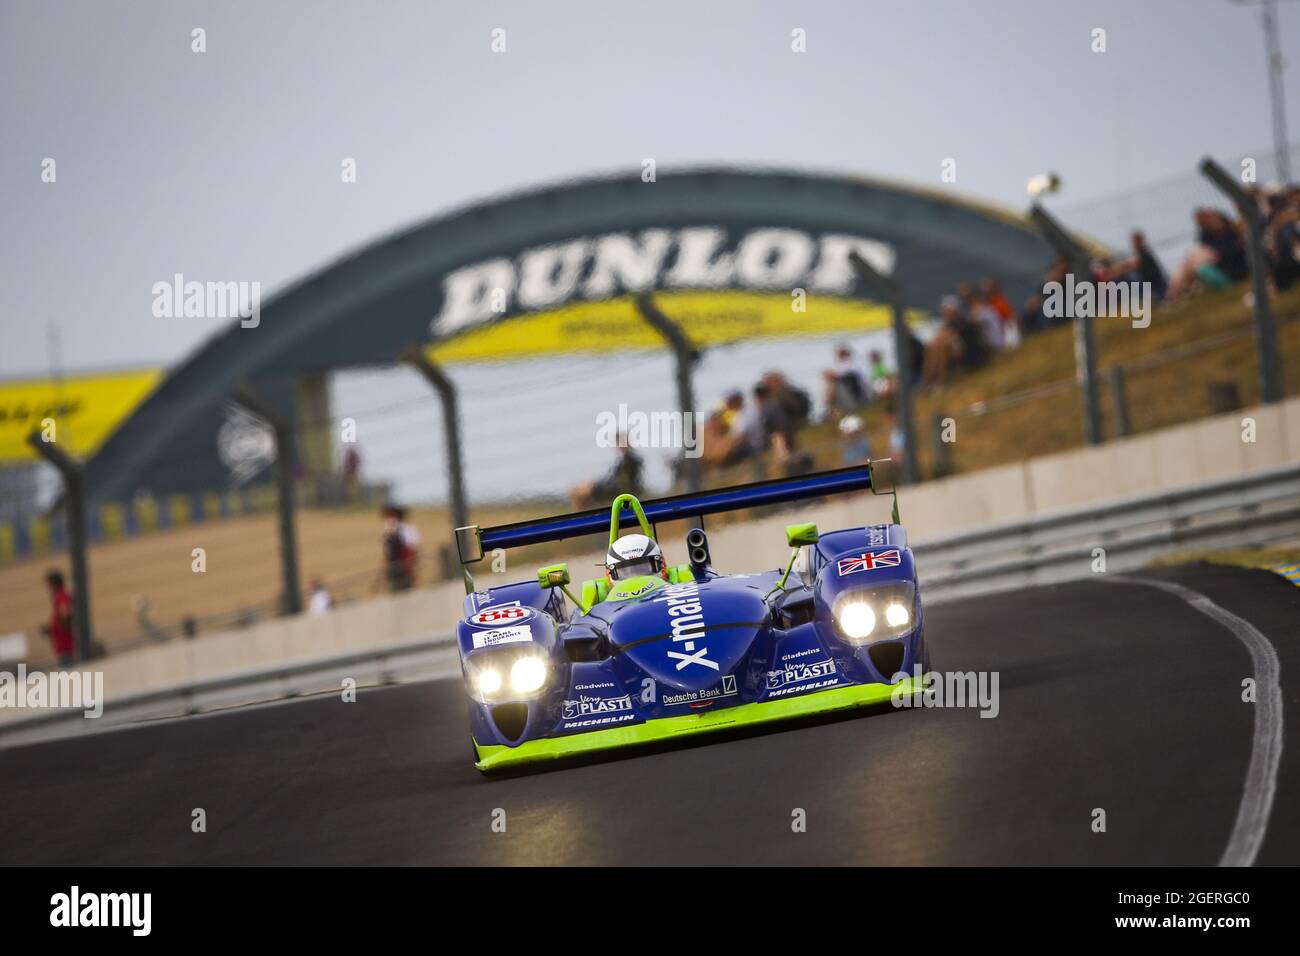 88 Short Martin (gbr), Dallara SP1, action pendant les légendes de course d'endurance 2021 sur le circuit des 24 heures du Mans, du 18 au 21 août 2021 au Mans, France - photo Joao Filipe / DPPI Banque D'Images